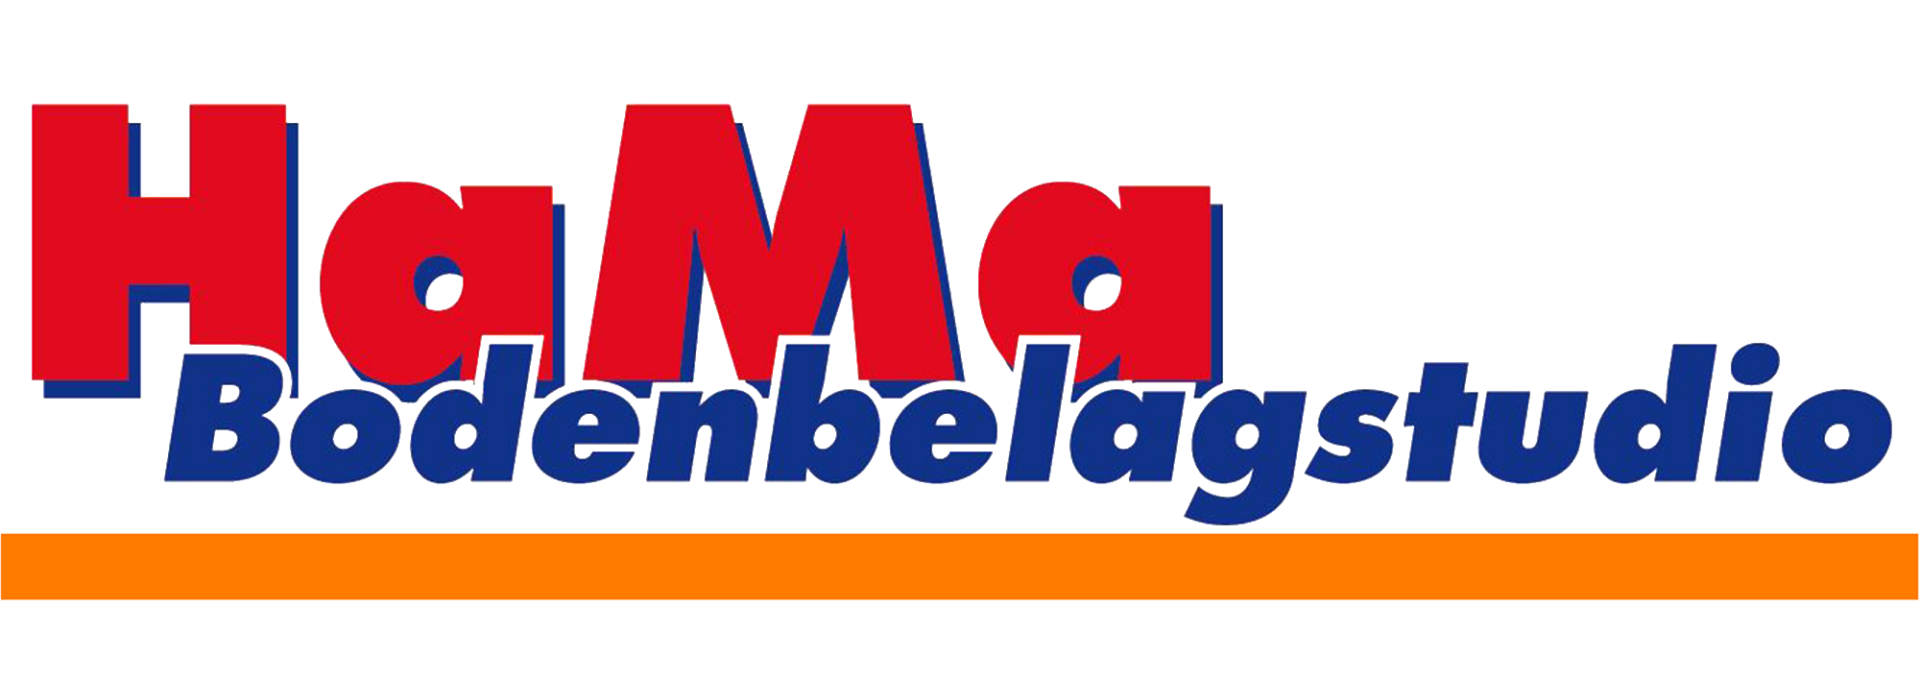 Logo Hama Bodenbelagsstudio Mutterstadt freigestellt